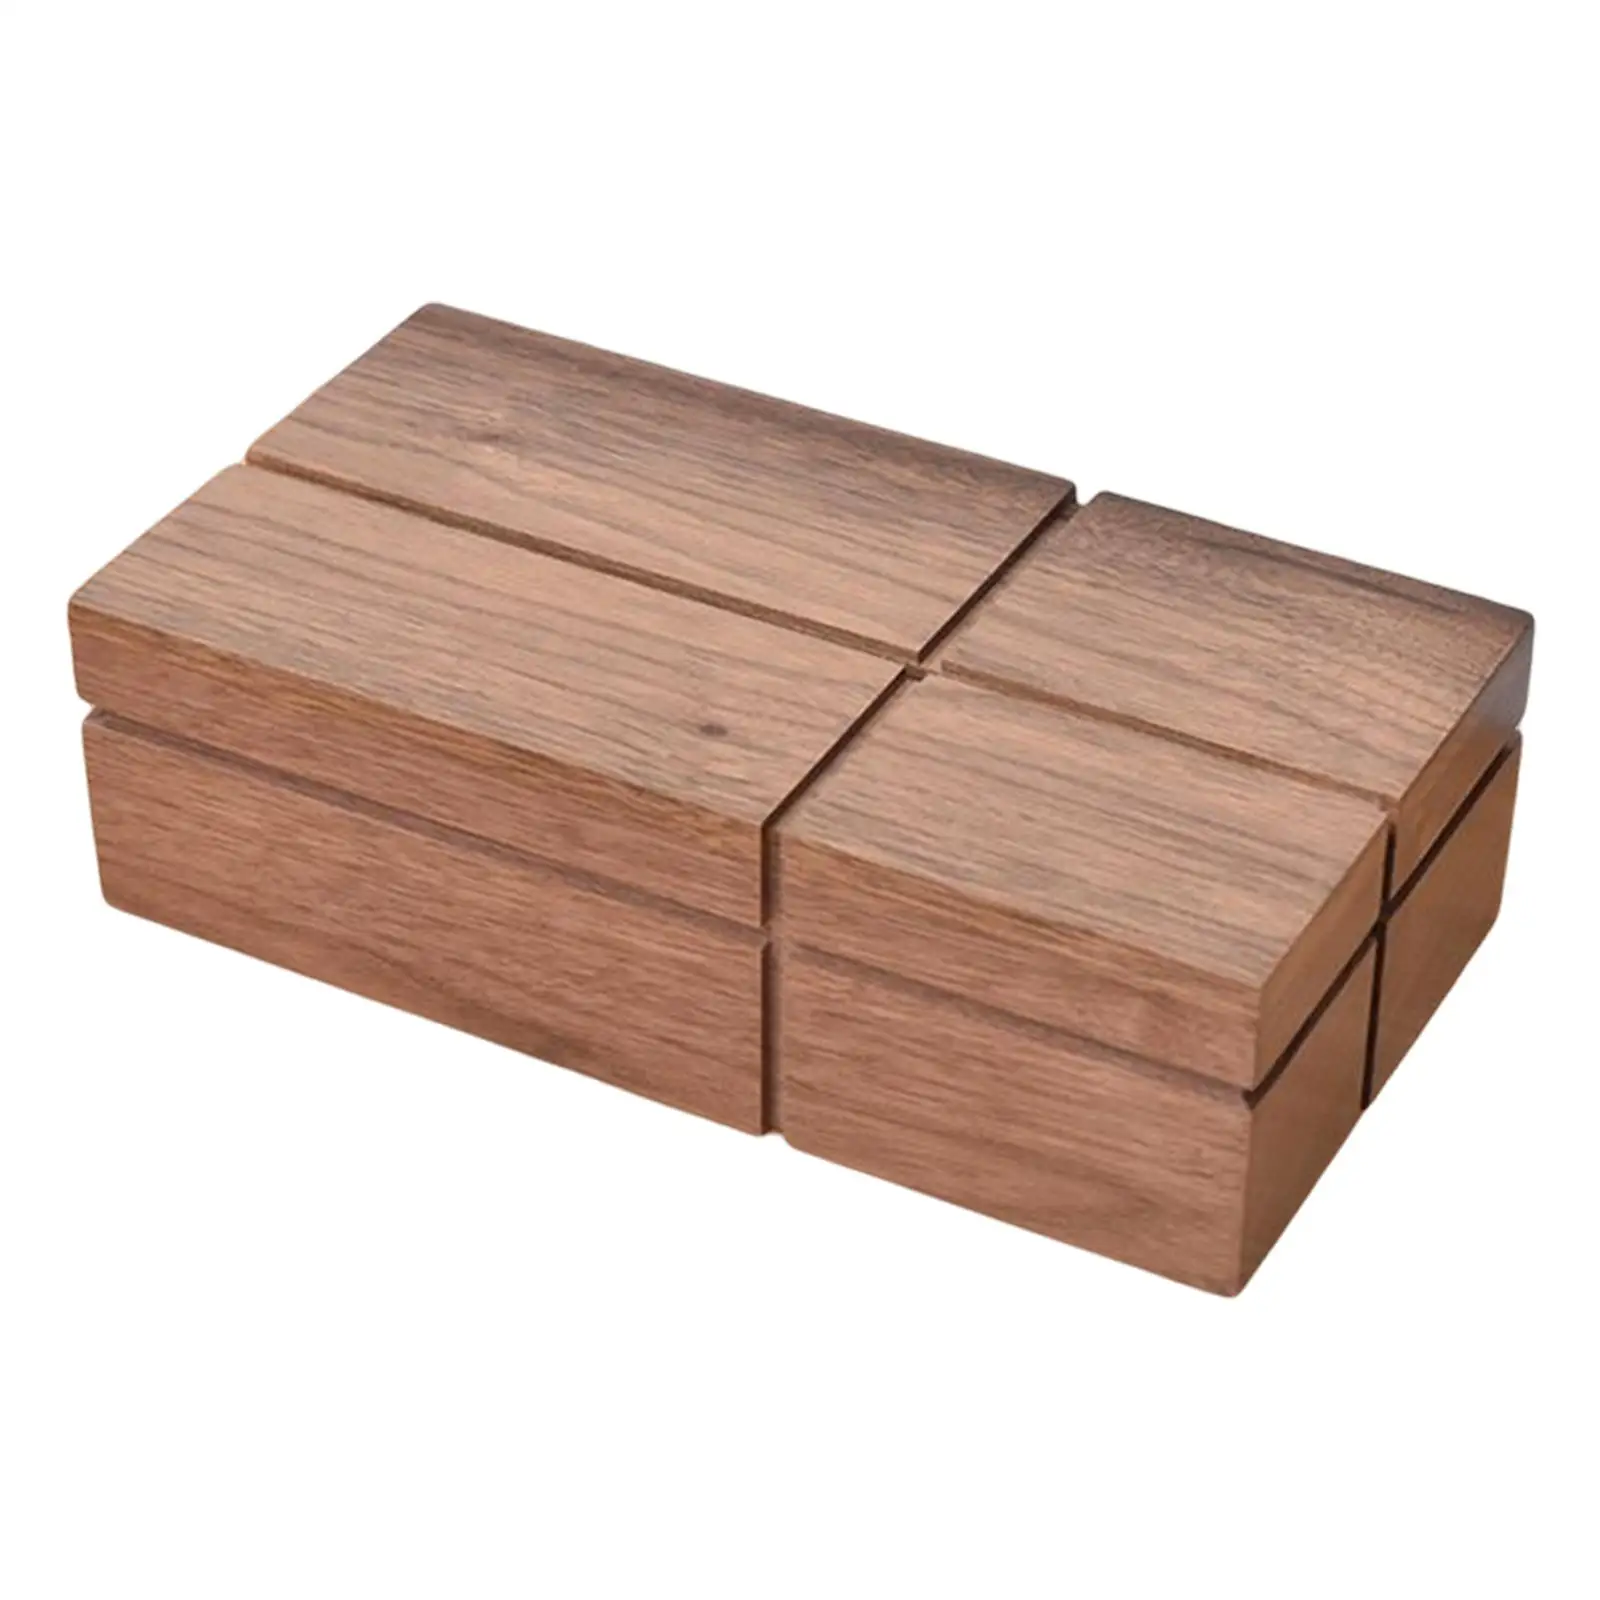 Wooden Napkin Paper Holder Case Retro Rectangular Tissue Box Holder for Living Room